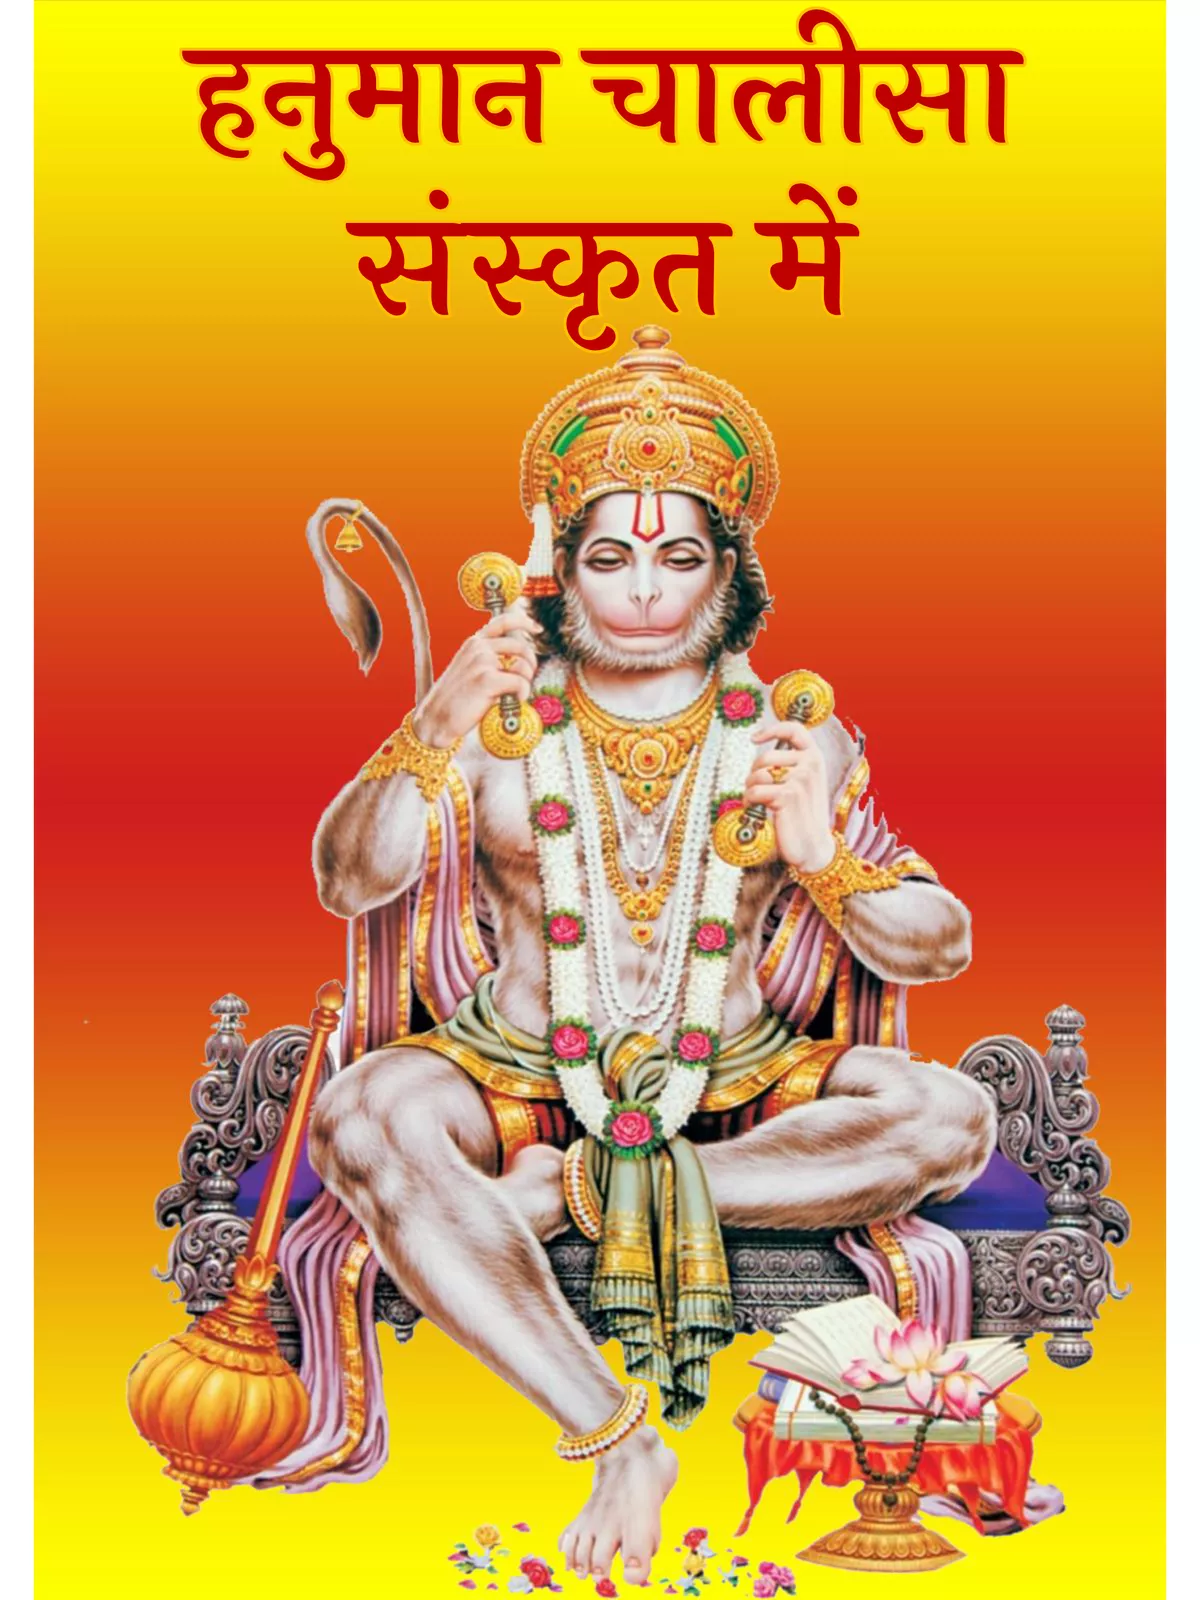 हनुमान चालीसा संस्कृत – Hanuman Chalisa